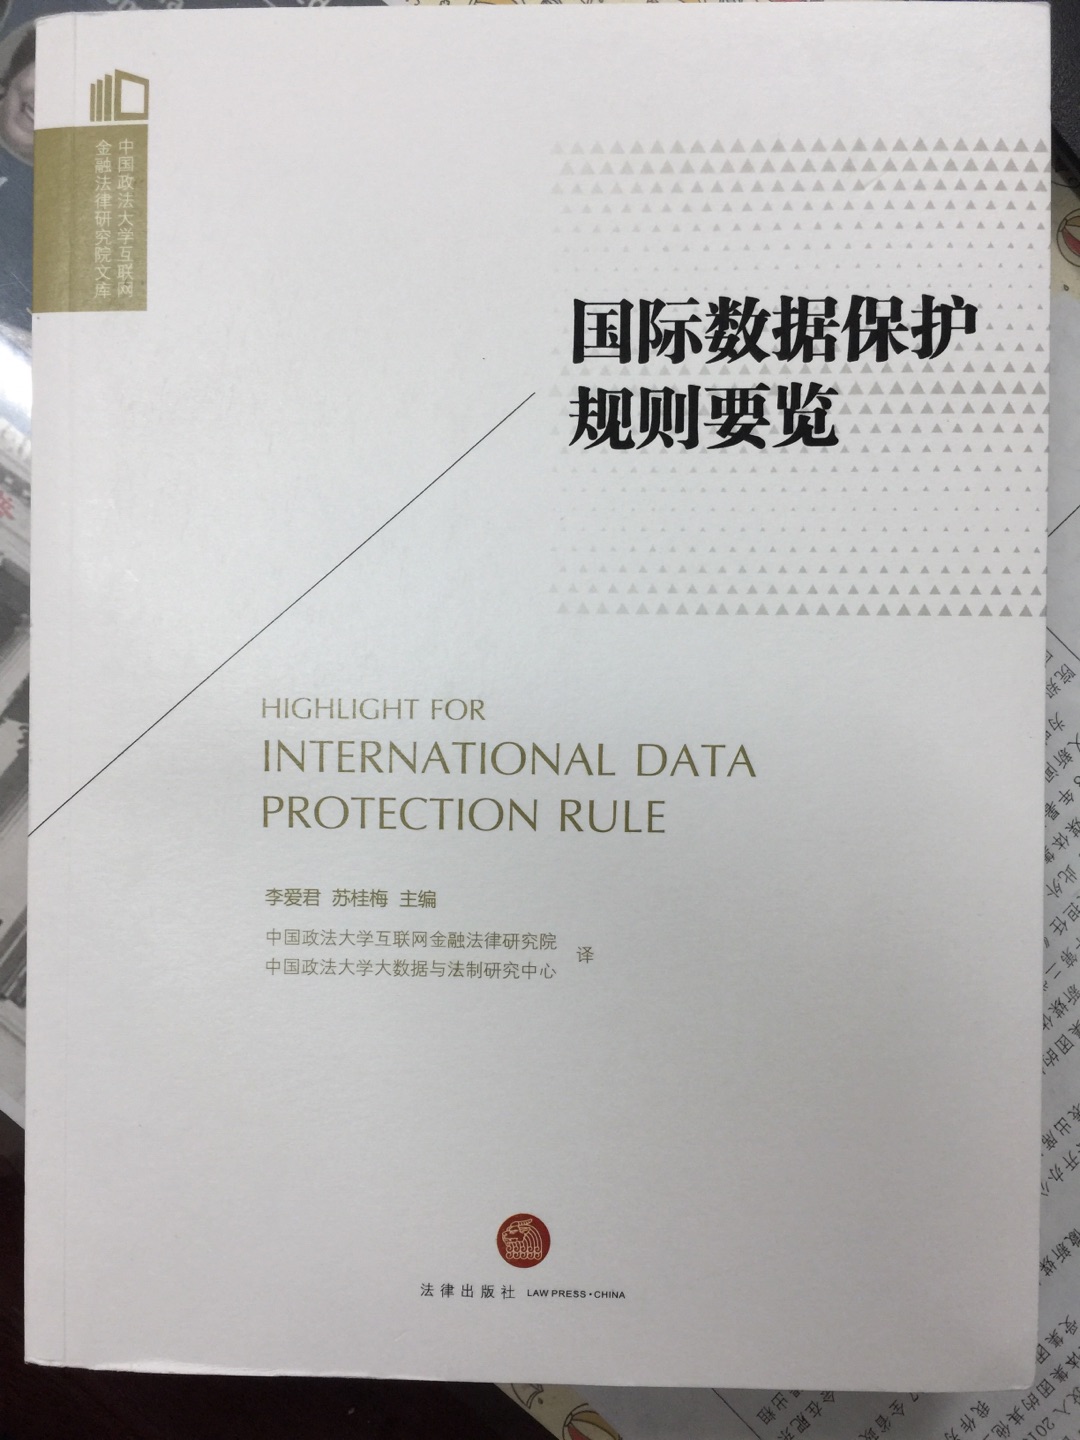 翻译了世界上主流的数据保护法律，功莫大焉！不过我买过其他译本，不知质量孰高孰低？